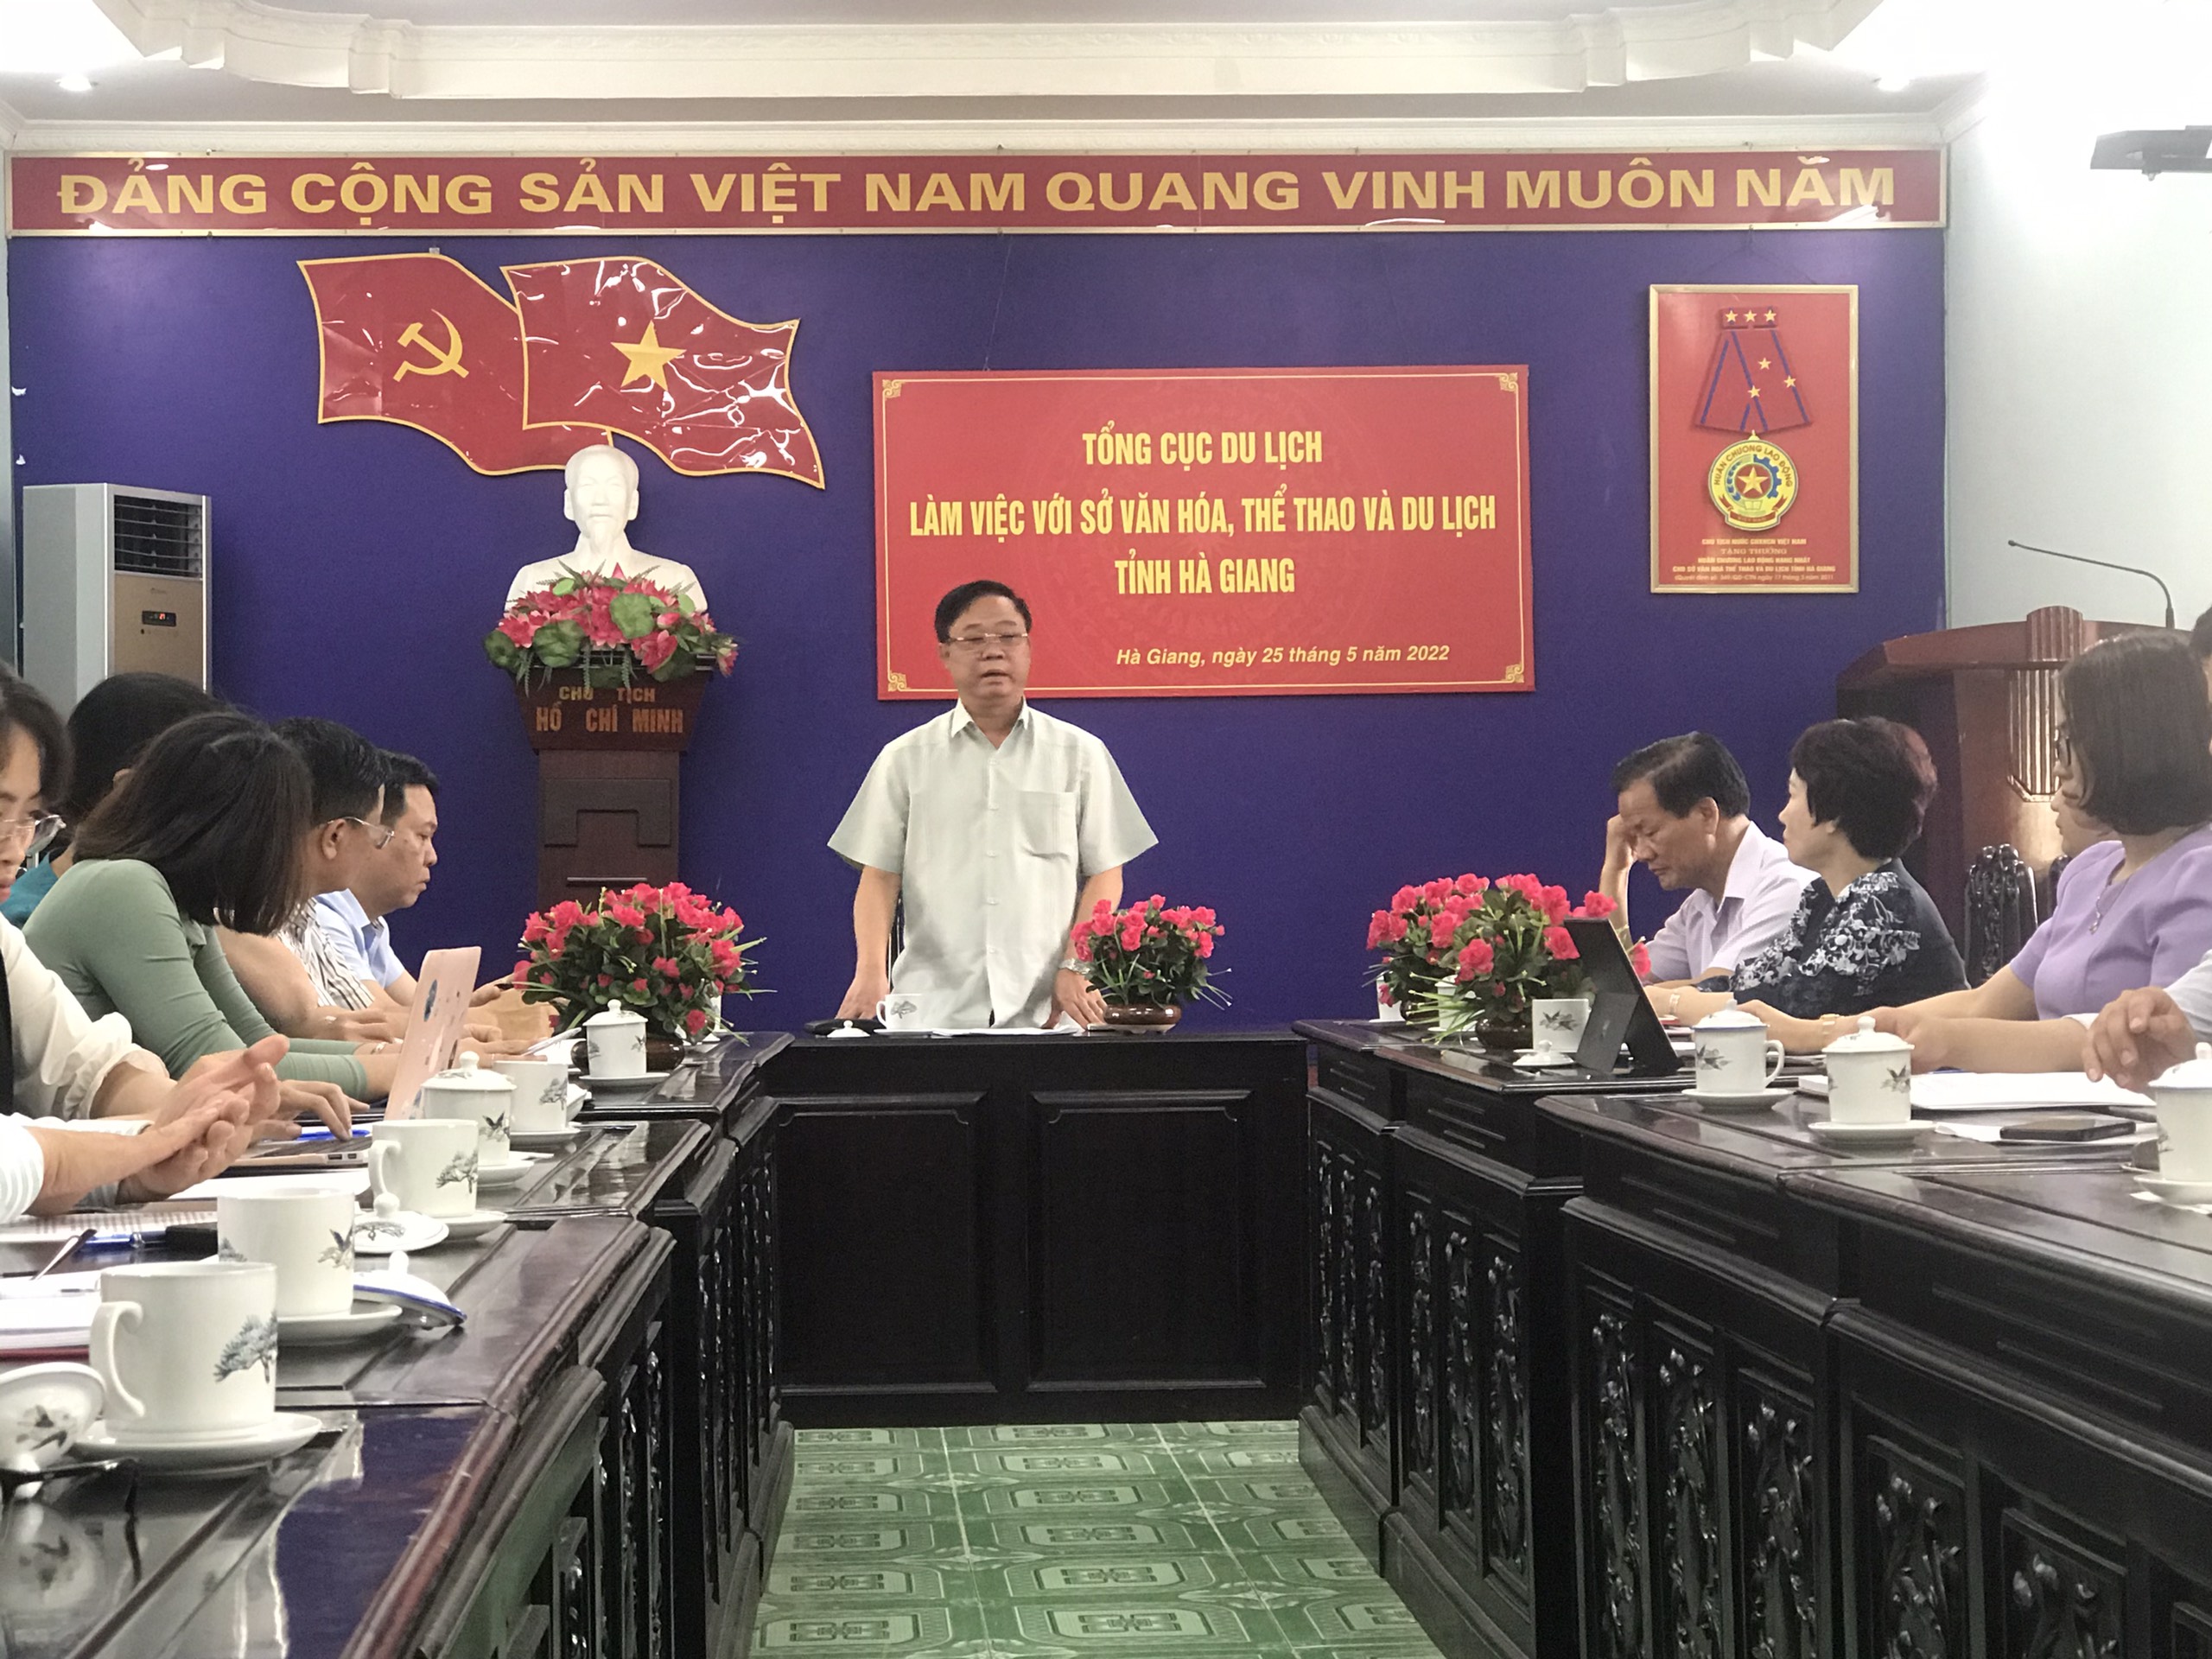 Phó Tổng cục trưởng TCDL Phạm Văn Thủy phát biểu tại buổi làm việc